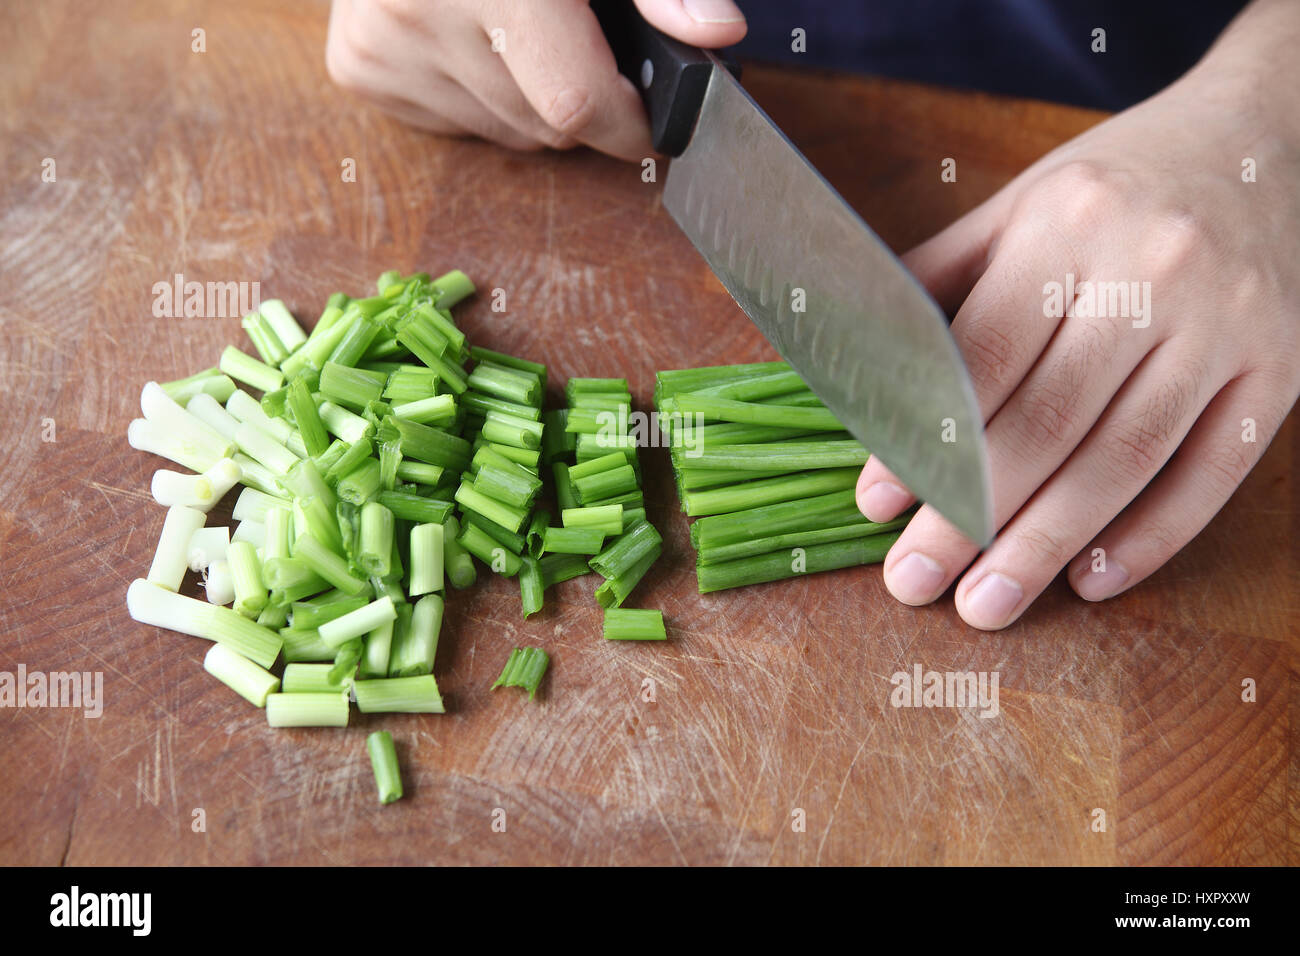 Un homme utilise un couteau de chef pour hacher les échalotes sur une planche à découper Banque D'Images